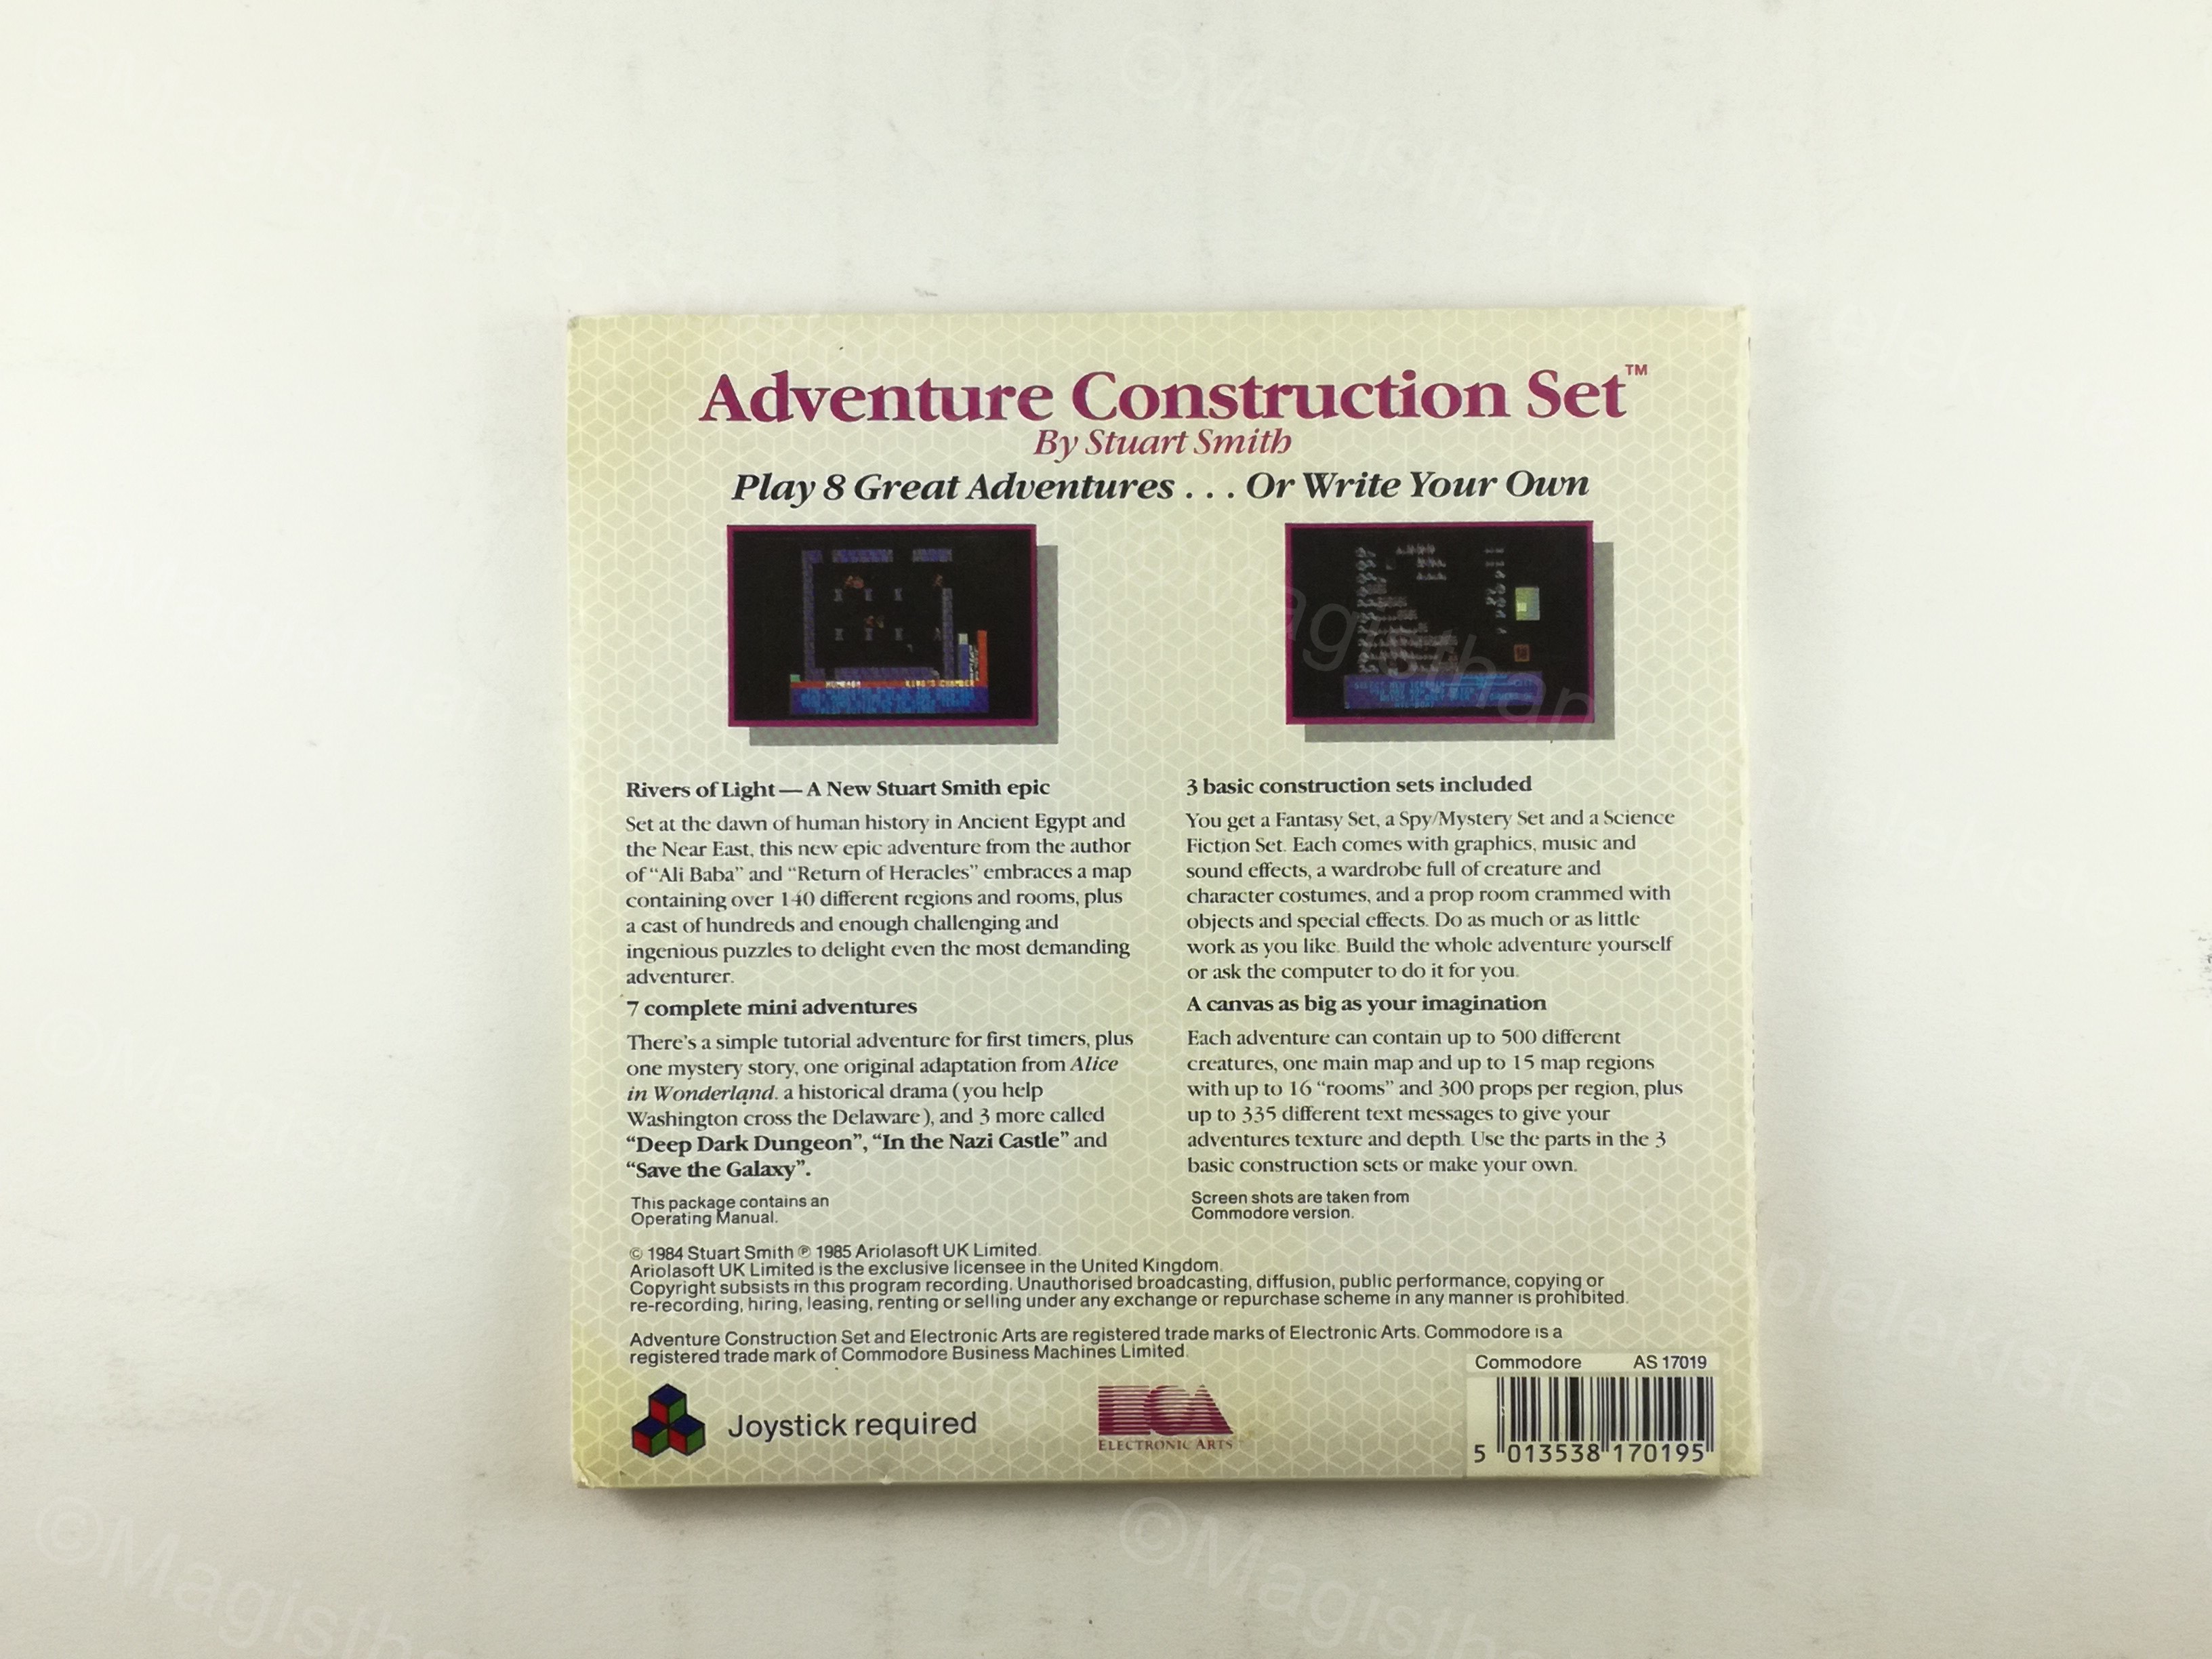 AdventureConstrutionSet_C64_Ariolasoft1_back.jpg